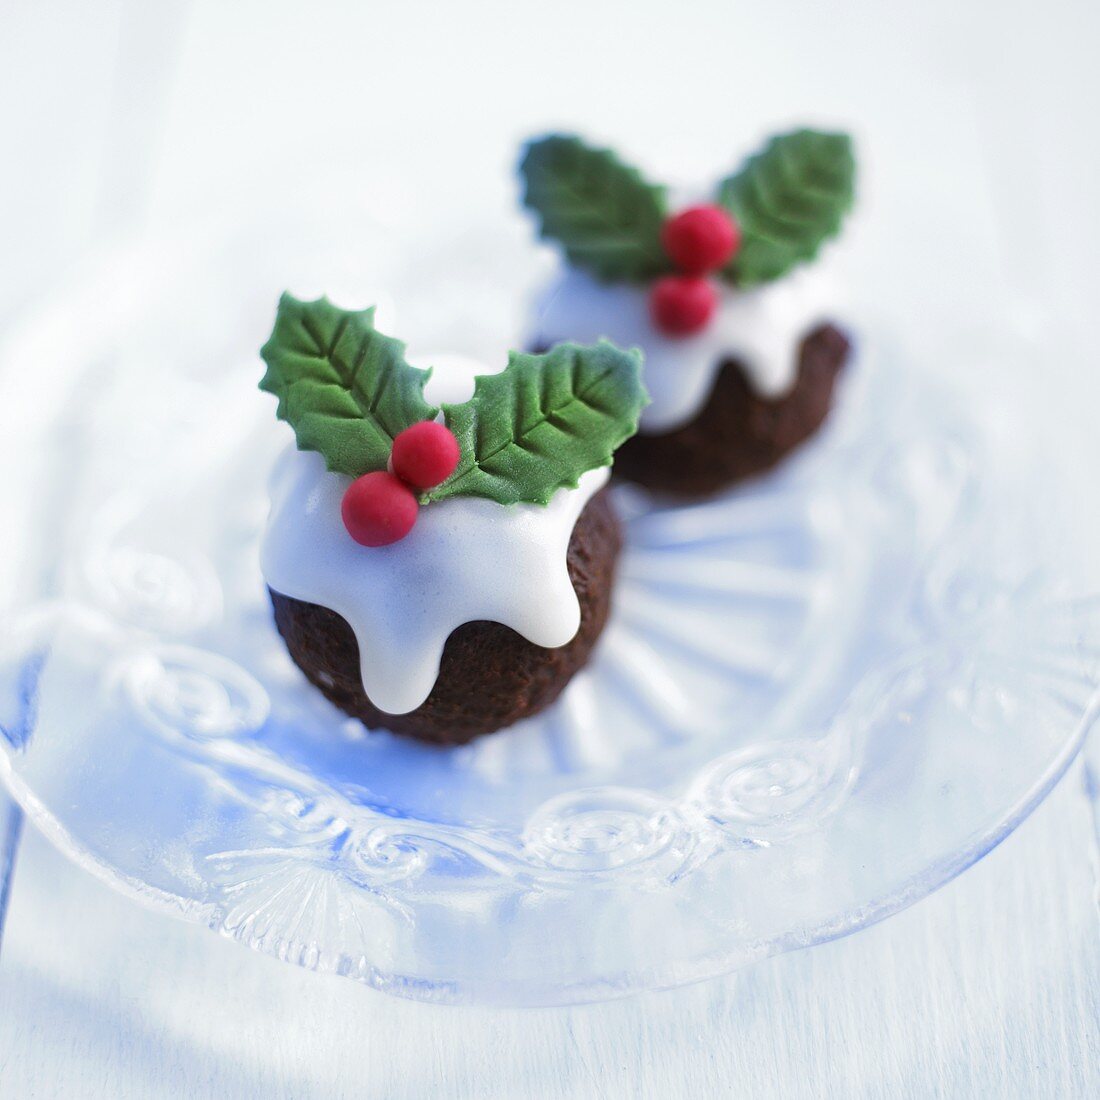 Christmas pudding truffles (Christmas sweets, UK)